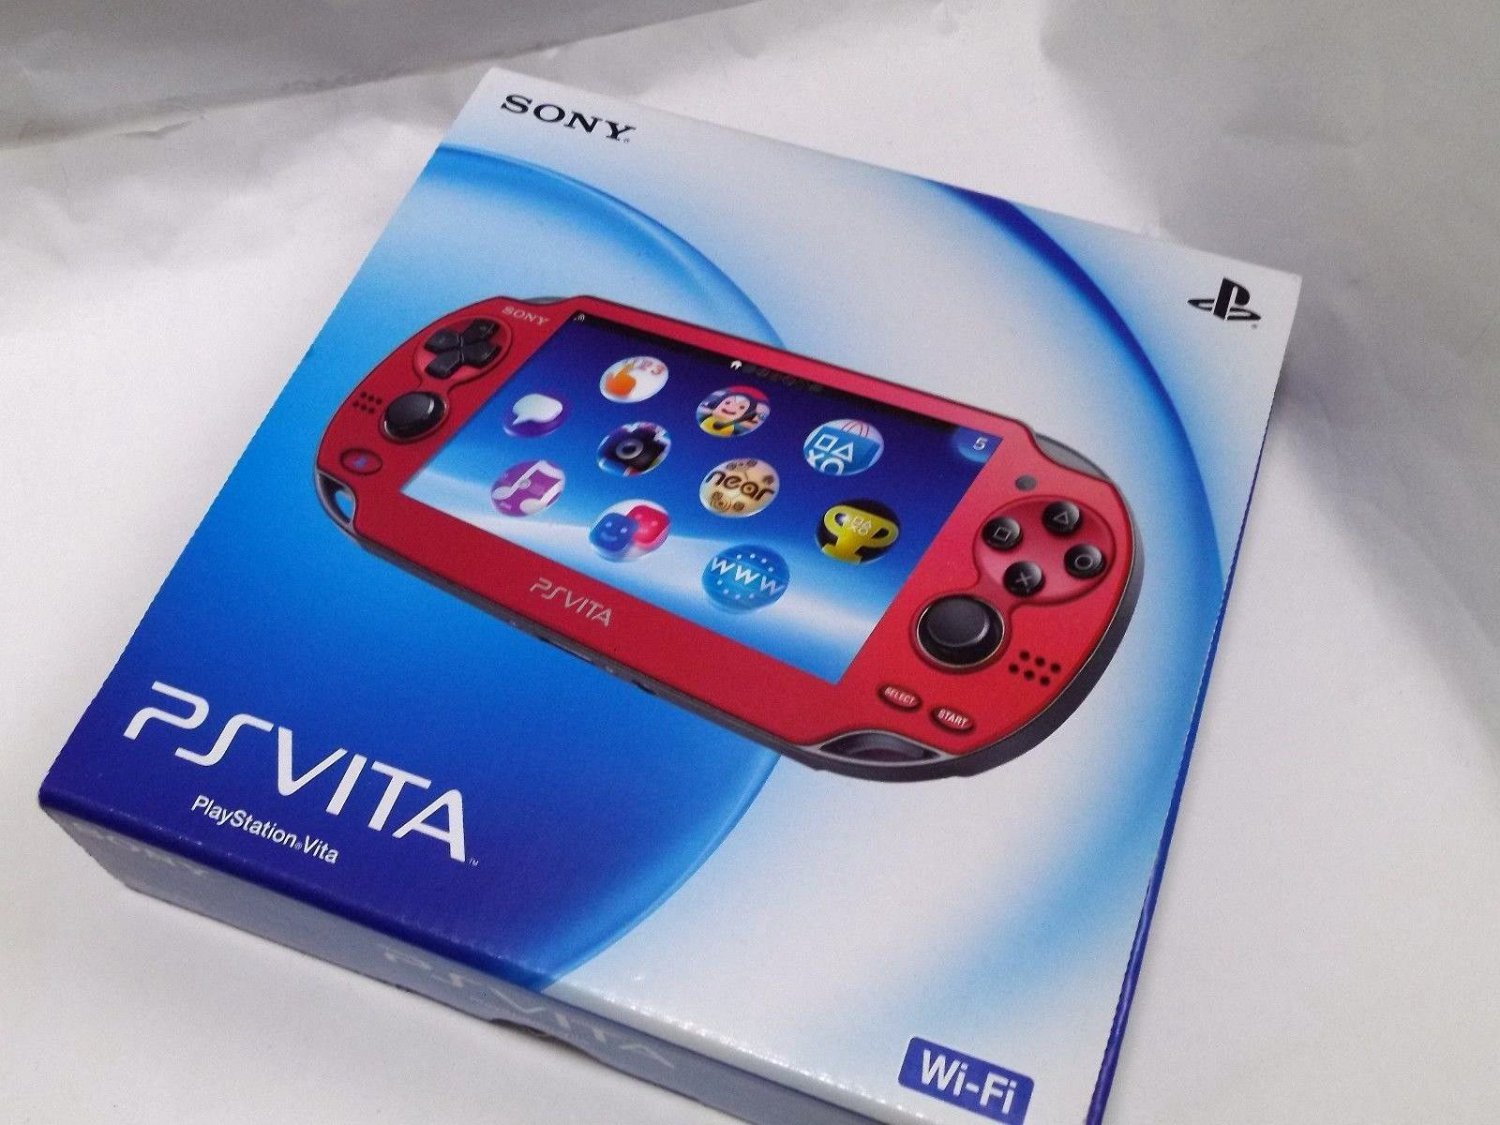 NEW SONY PS Vita PCH-1000 ZA03 RED Wi-fi Model Console